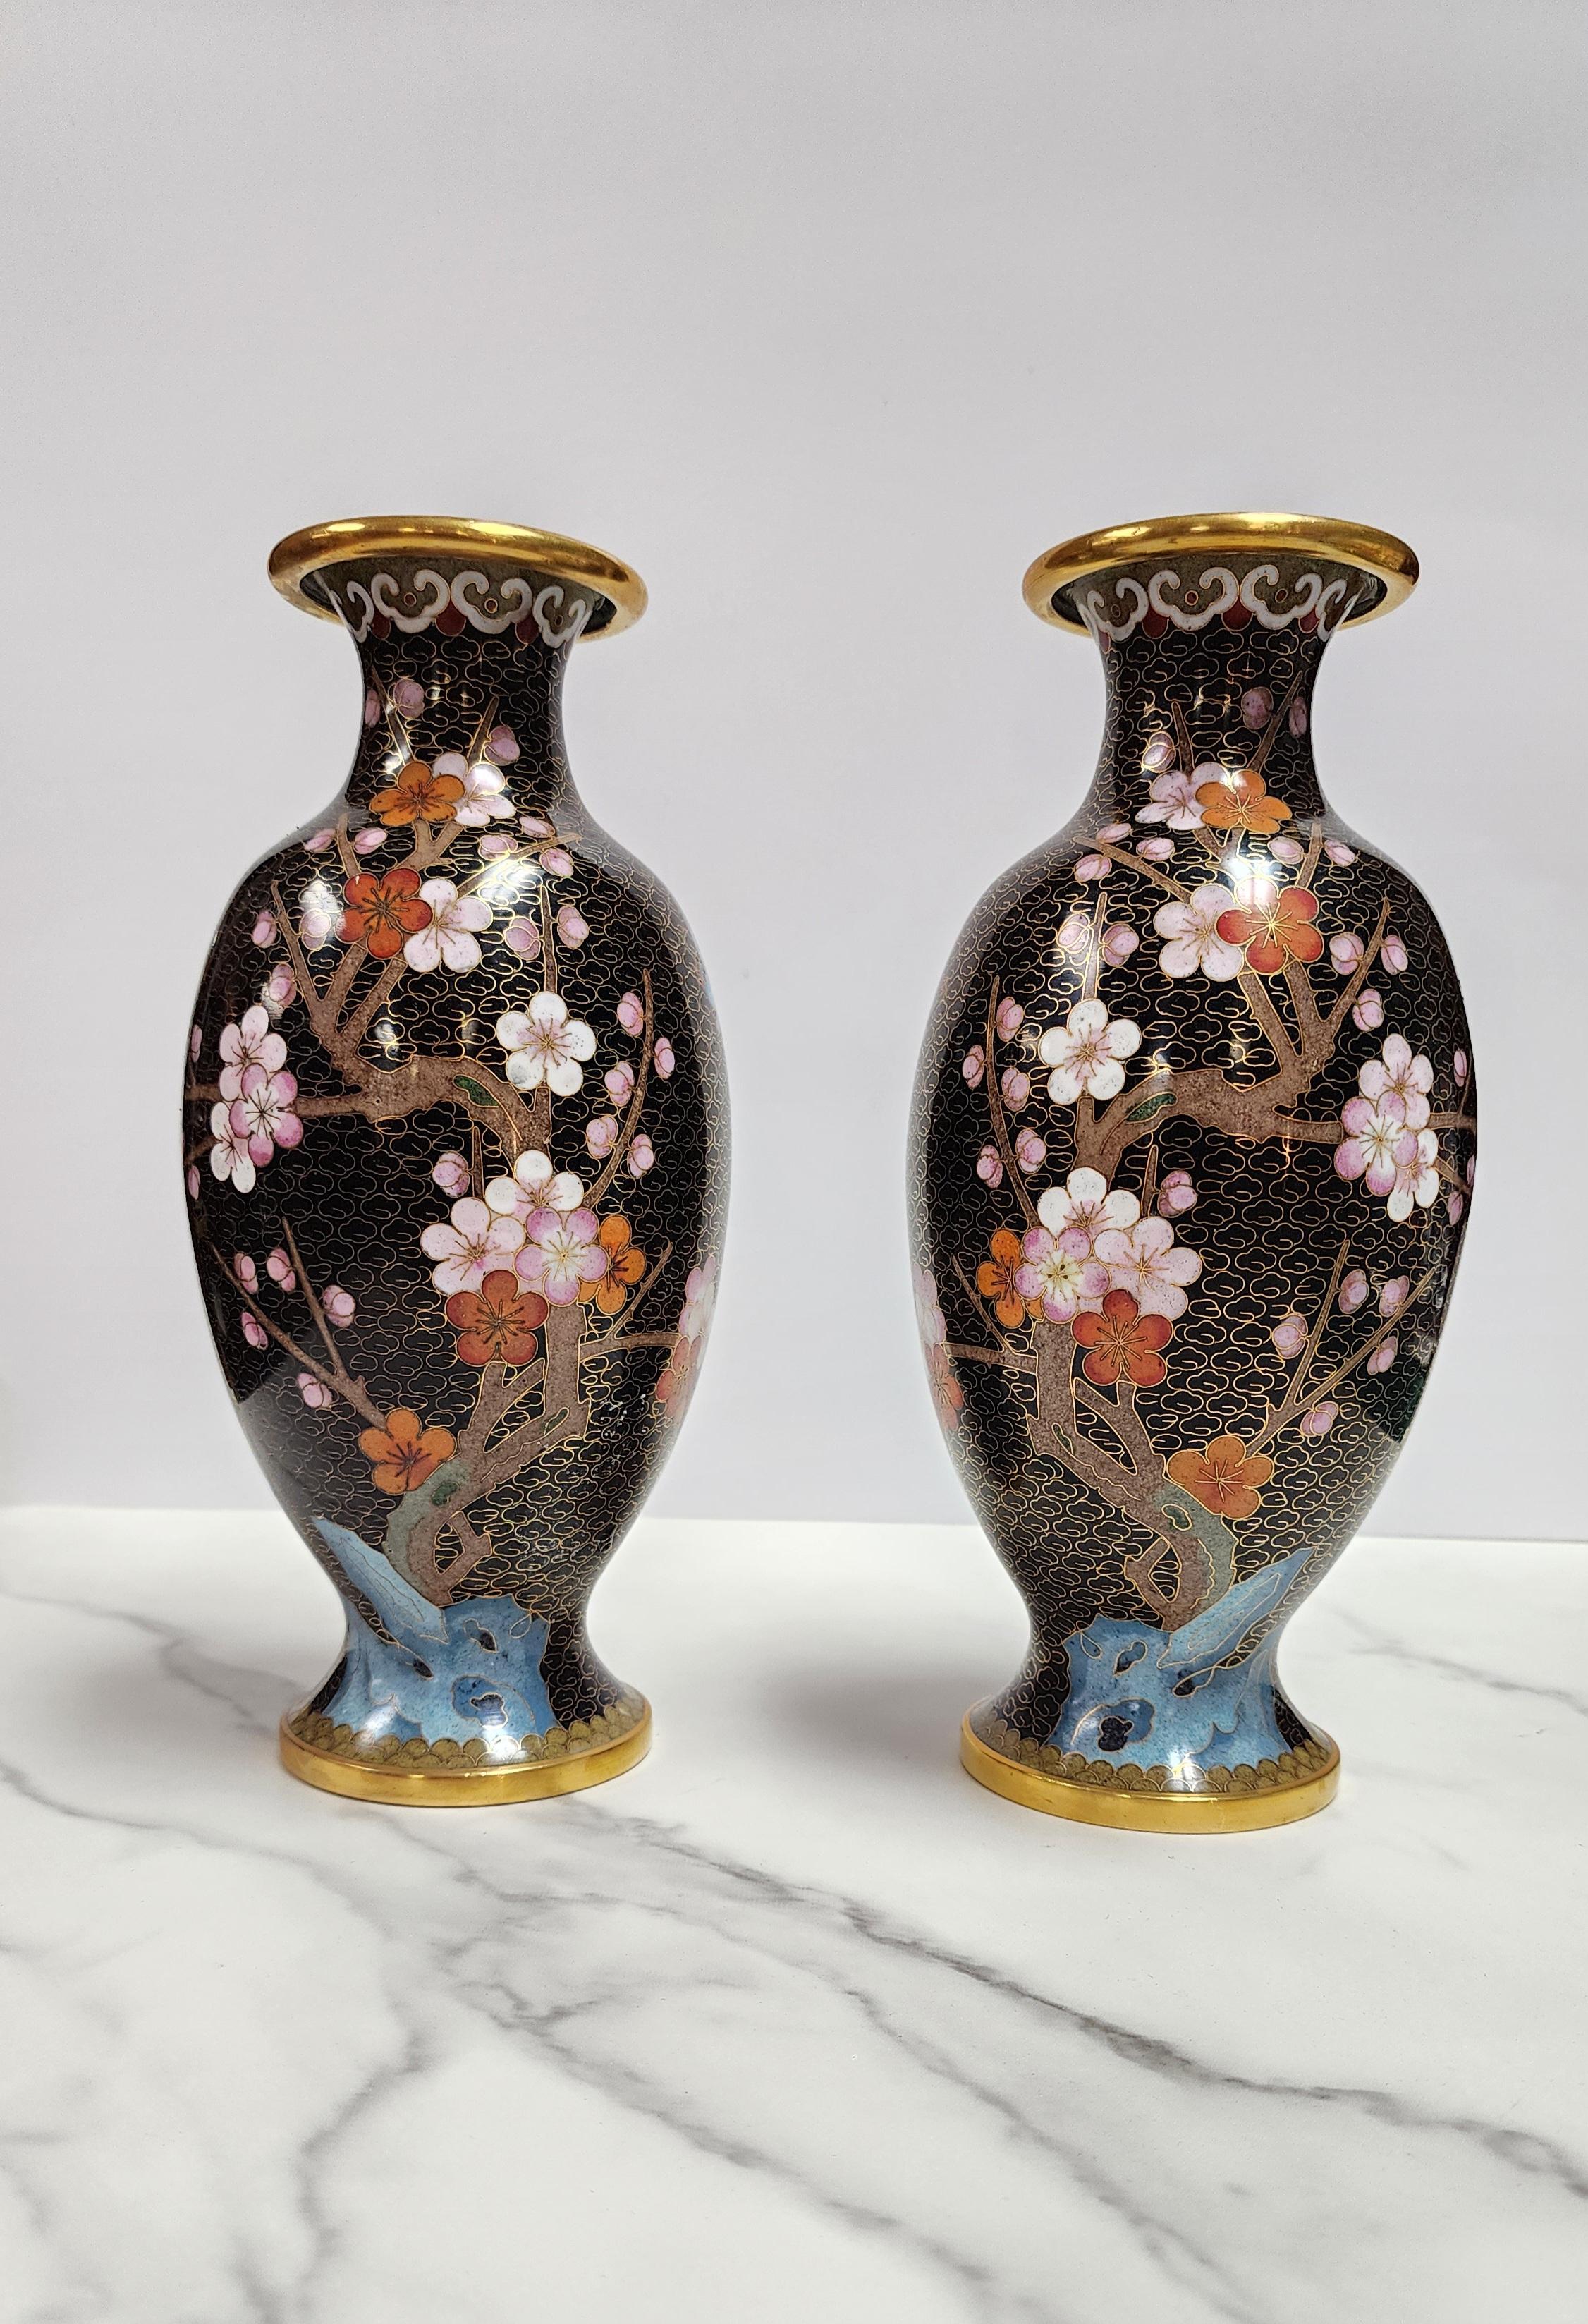 Dieses seltene Paar chinesischer Cloisonne-Emaille-Vasen ist insofern ungewöhnlich, als sich das Design von einer Vase zur anderen perfekt spiegelt. Zu den Blumen- und Vogelmotiven gehören Kirschblüten, eine weiße Rose und ein blauer Vogel. Die